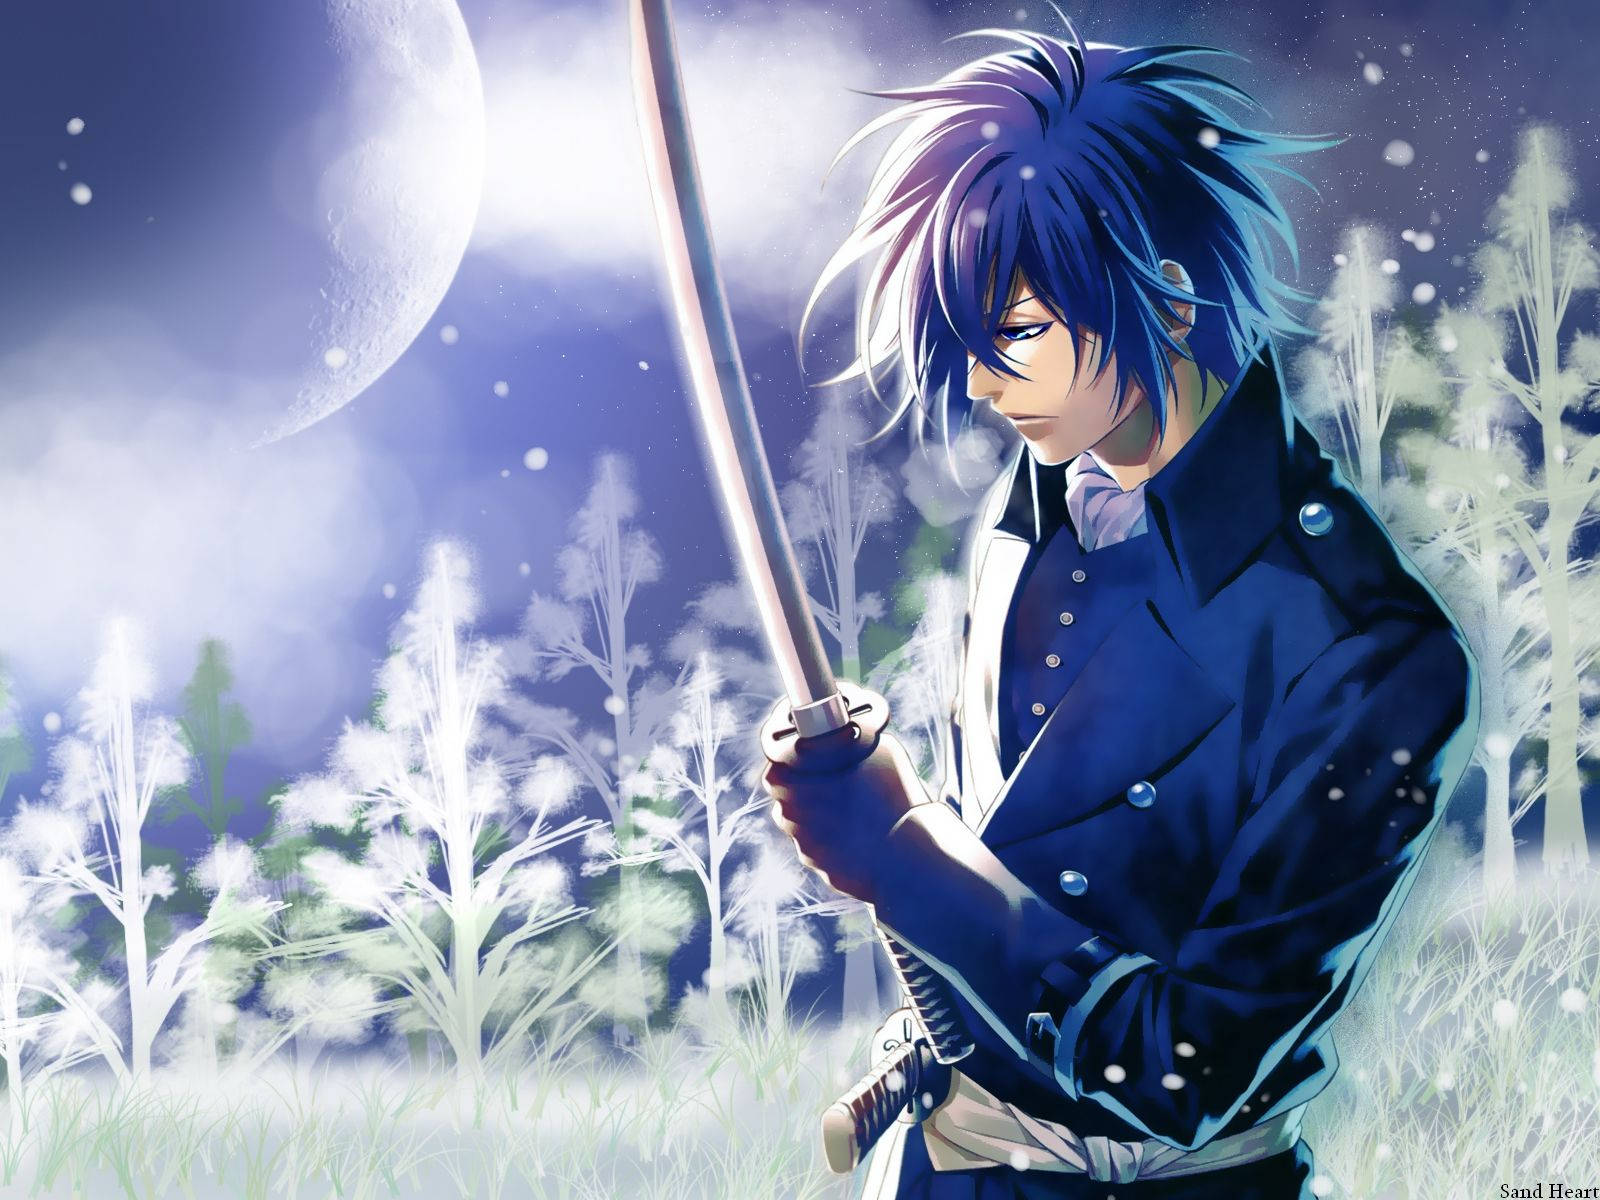 Eintrauriger Anime-junge In Blau Sitzt Im Mondlicht. Wallpaper